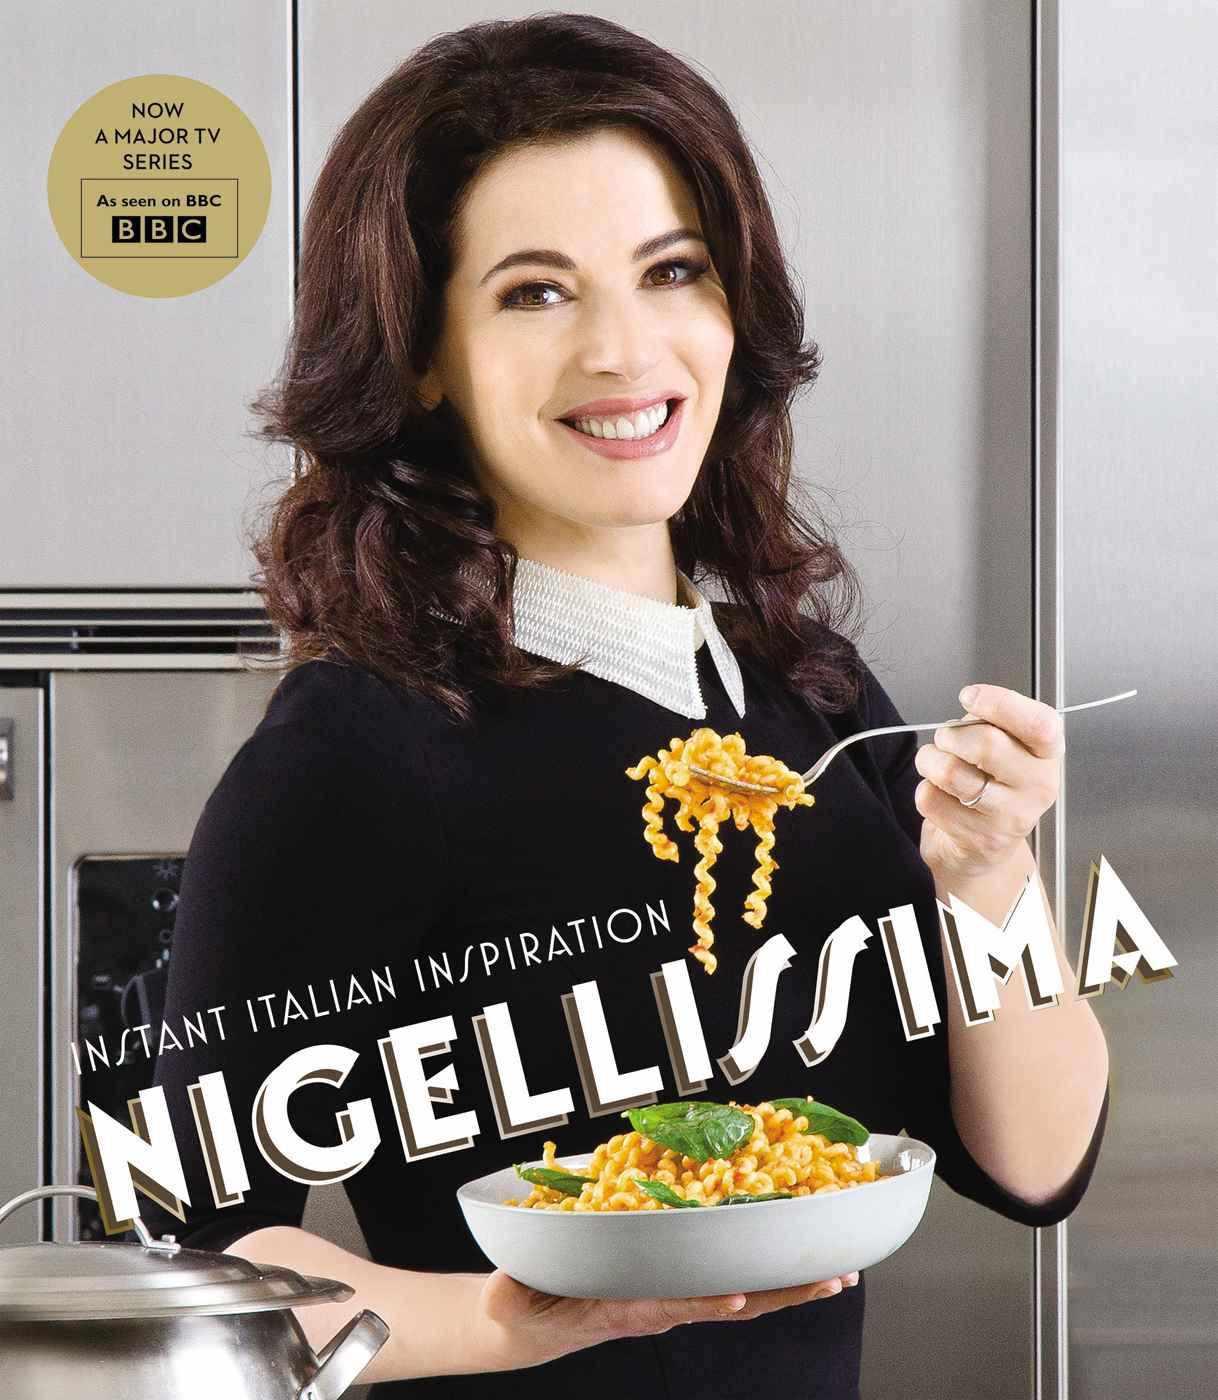 Nigellissima: Instant Italian Inspiration by Nigella Lawson